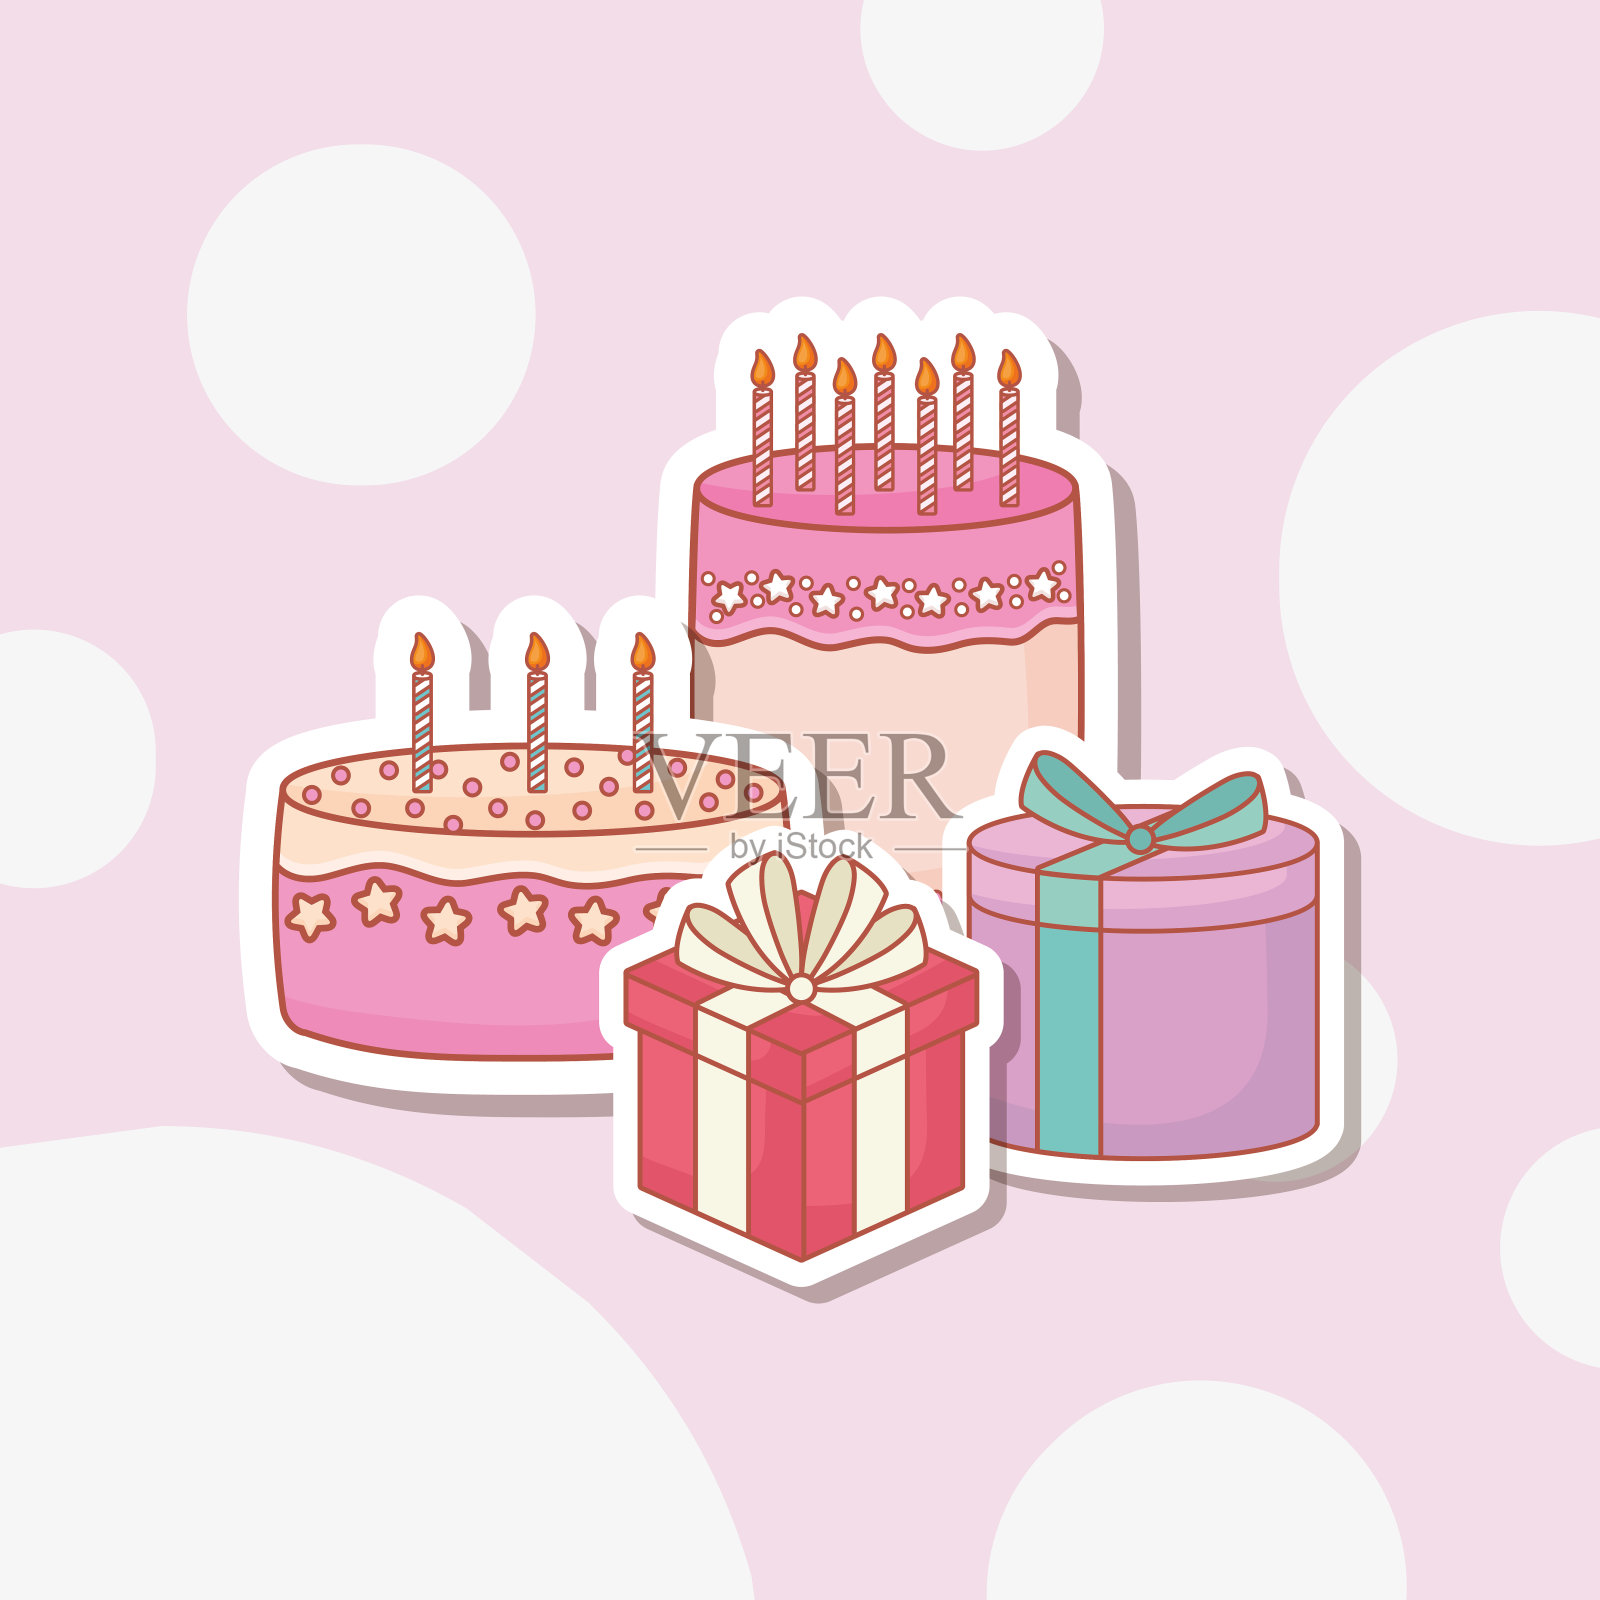 有蛋糕和礼物的生日贺卡设计模板素材